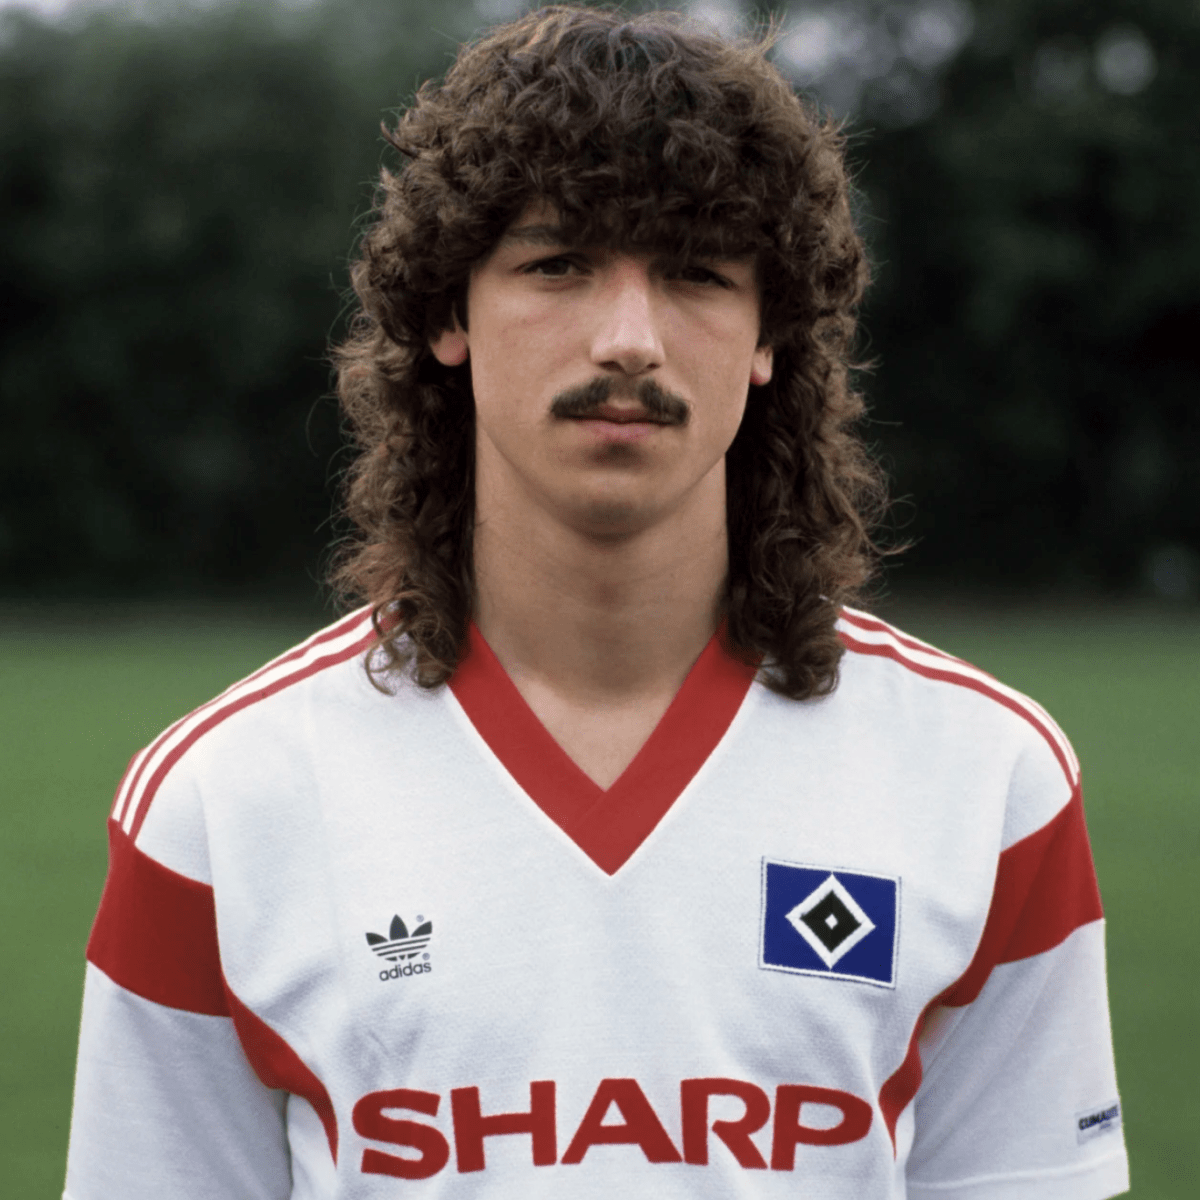 Walter Laubinger na oficiální fotografii z roku 1987 (zdroj: Hamburger SV)